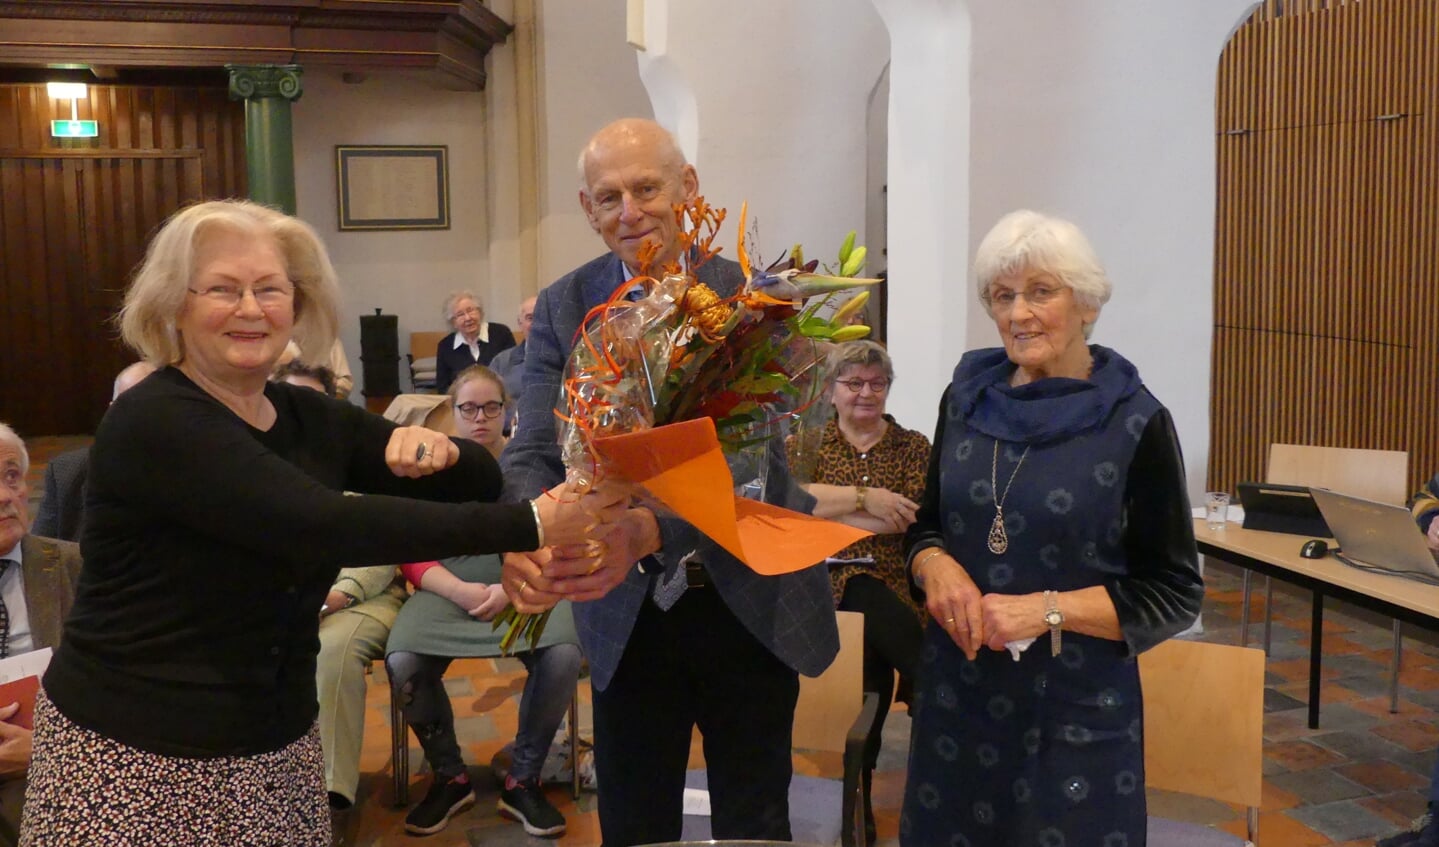 Rijk en Jannie Spronk ontvangen bloemen voor hun (muzikale) inzet voor de kerk van voorzitter Joke Cornelissen van de kerkenraad. Foto: Albert Oolhorst